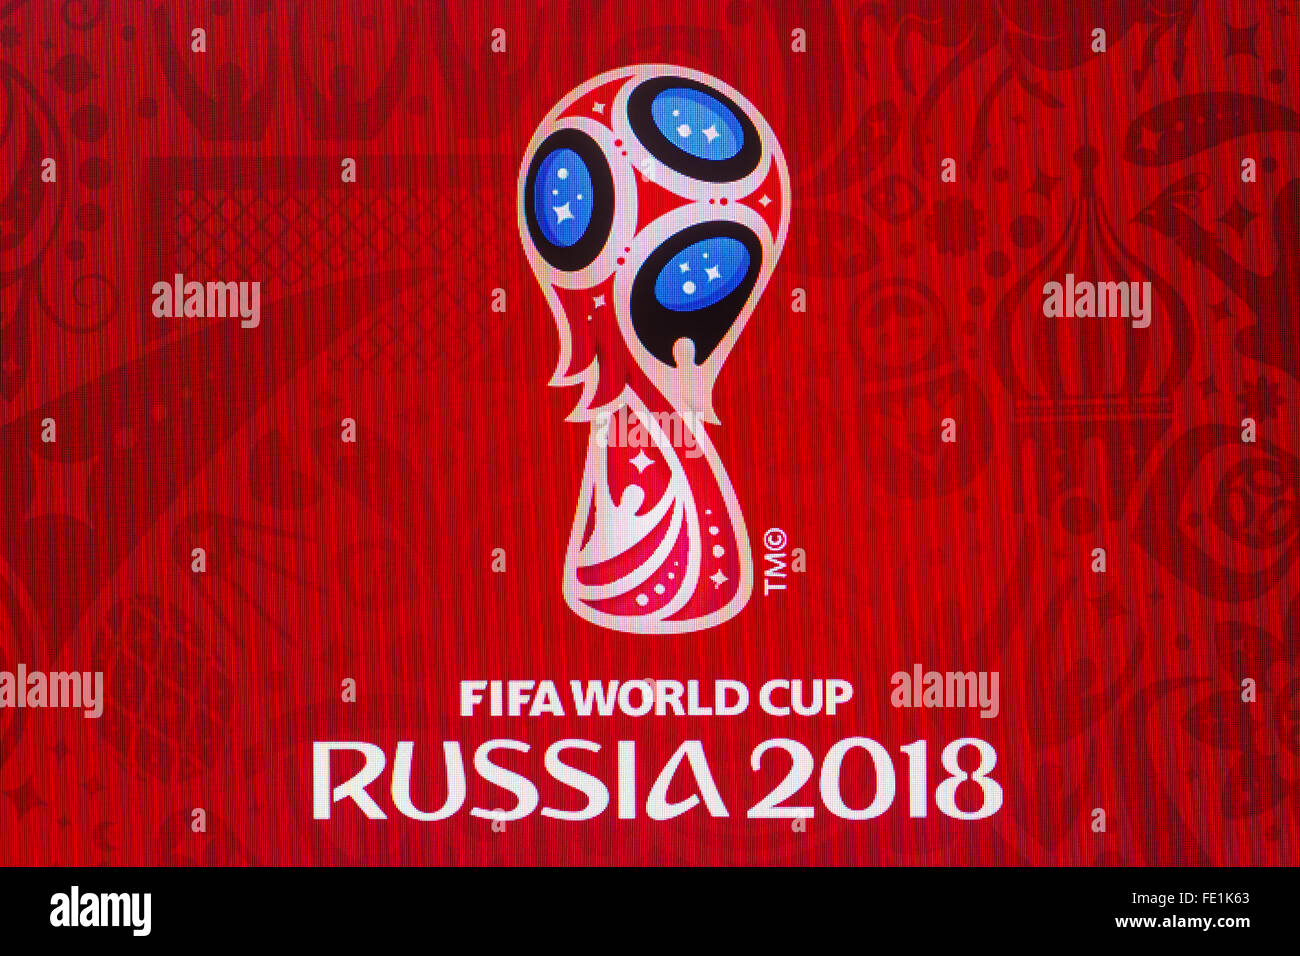 GDANSK, POLOGNE - Le 29 octobre 2015. Logo de la coupe du monde de football 2018 en Russie sur l'écran d'ordinateur. Utilisez uniquement éditoriale Banque D'Images